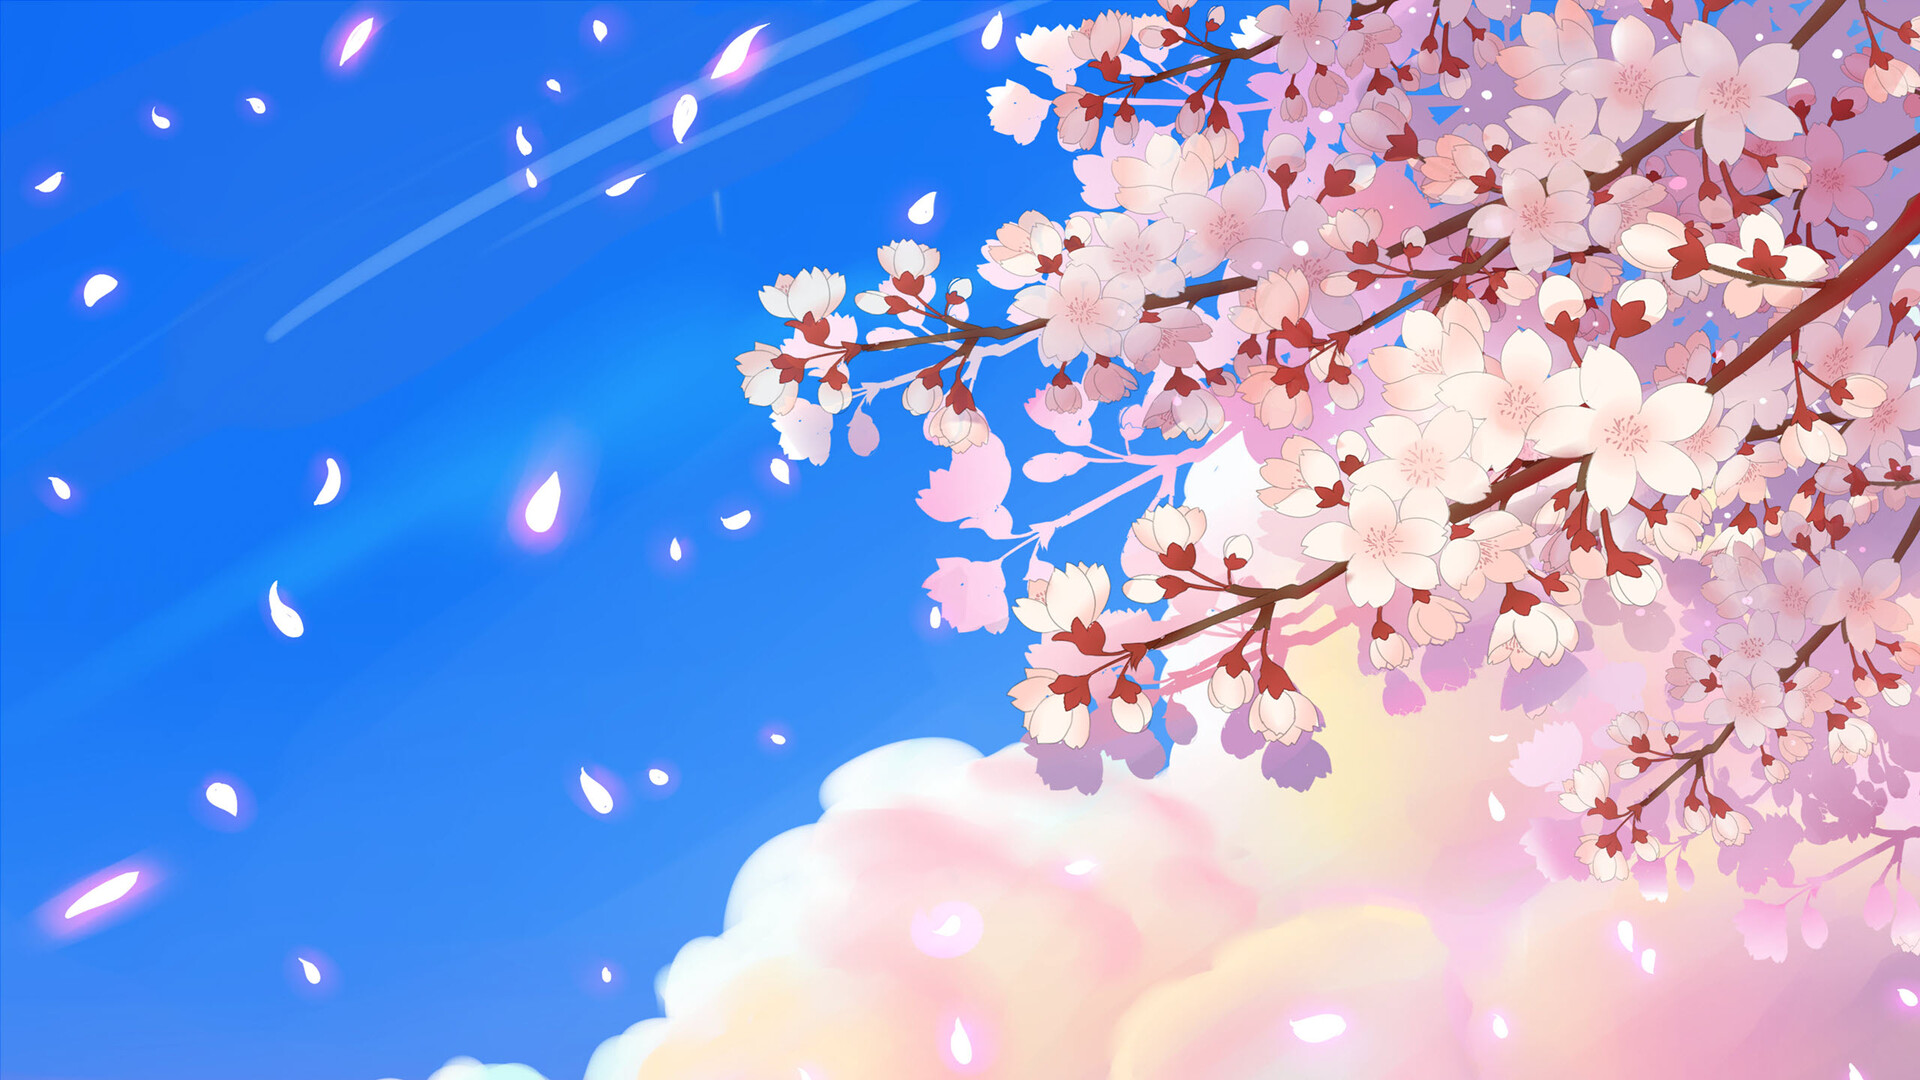 Anh đào (Anh đào) là một trong những biểu tượng đặc trưng của văn hóa và nghệ thuật Nhật Bản. Những cánh hoa hồng lấp lánh sẽ đưa bạn tới một thế giới đầy mơ mộng. Hãy xem hình ảnh để nhận thêm nhiều cảm hứng và đắm mình trong vẻ đẹp tuyệt đẹp của anh đào.